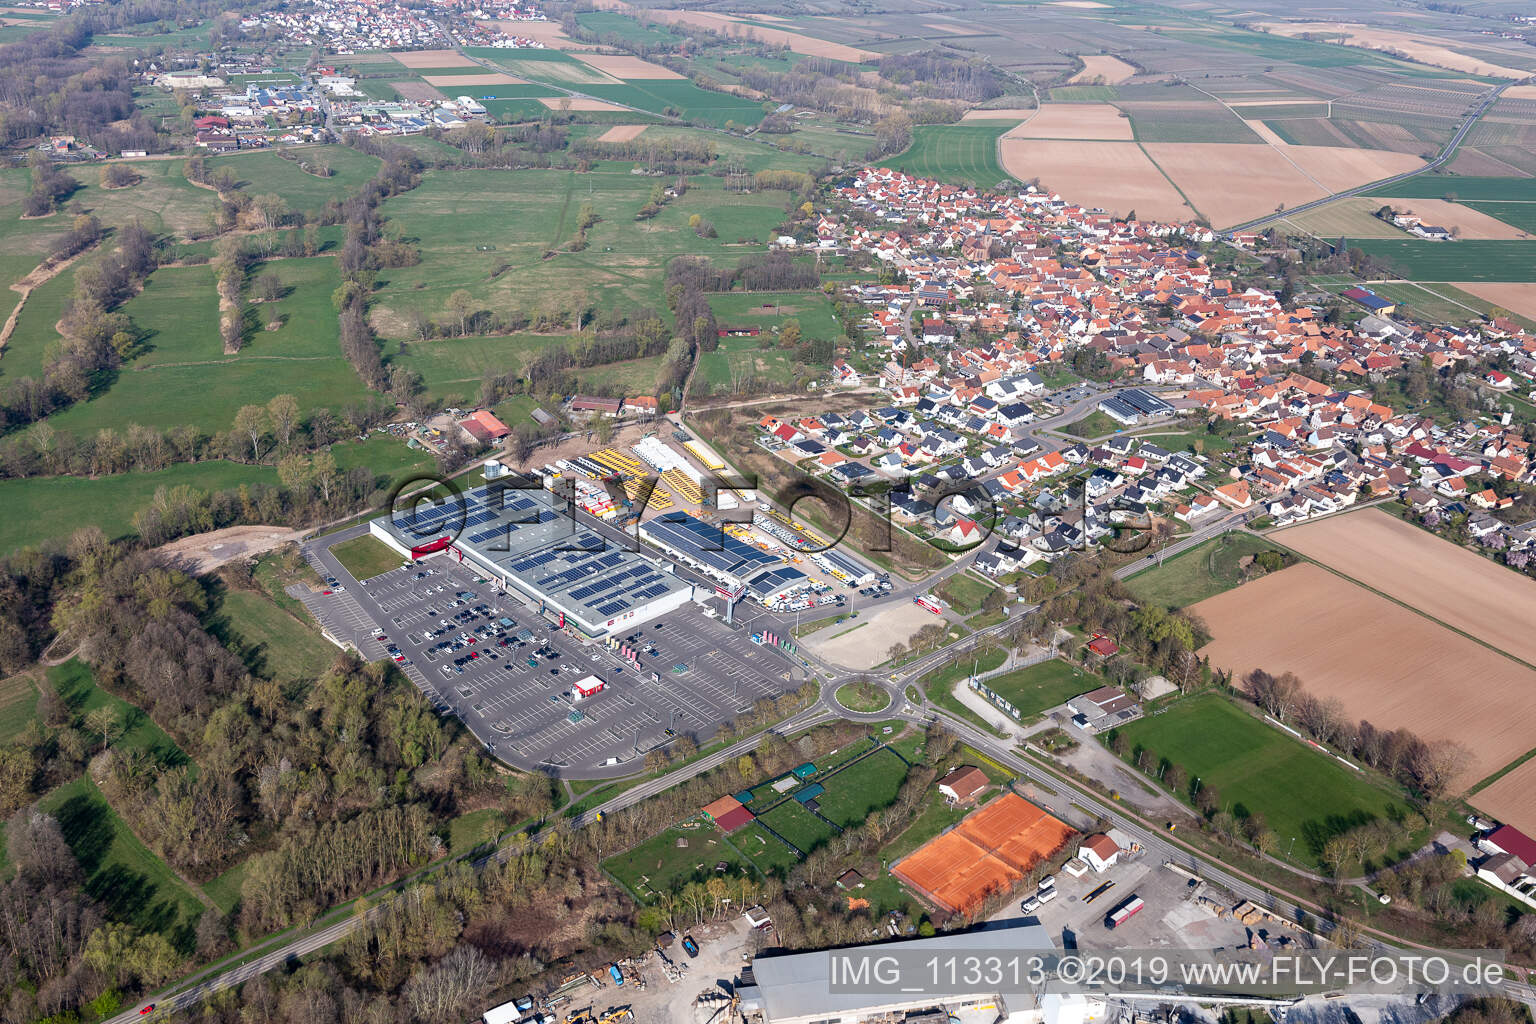 Vue aérienne de Parc de la mode Röther à Rohrbach dans le département Rhénanie-Palatinat, Allemagne